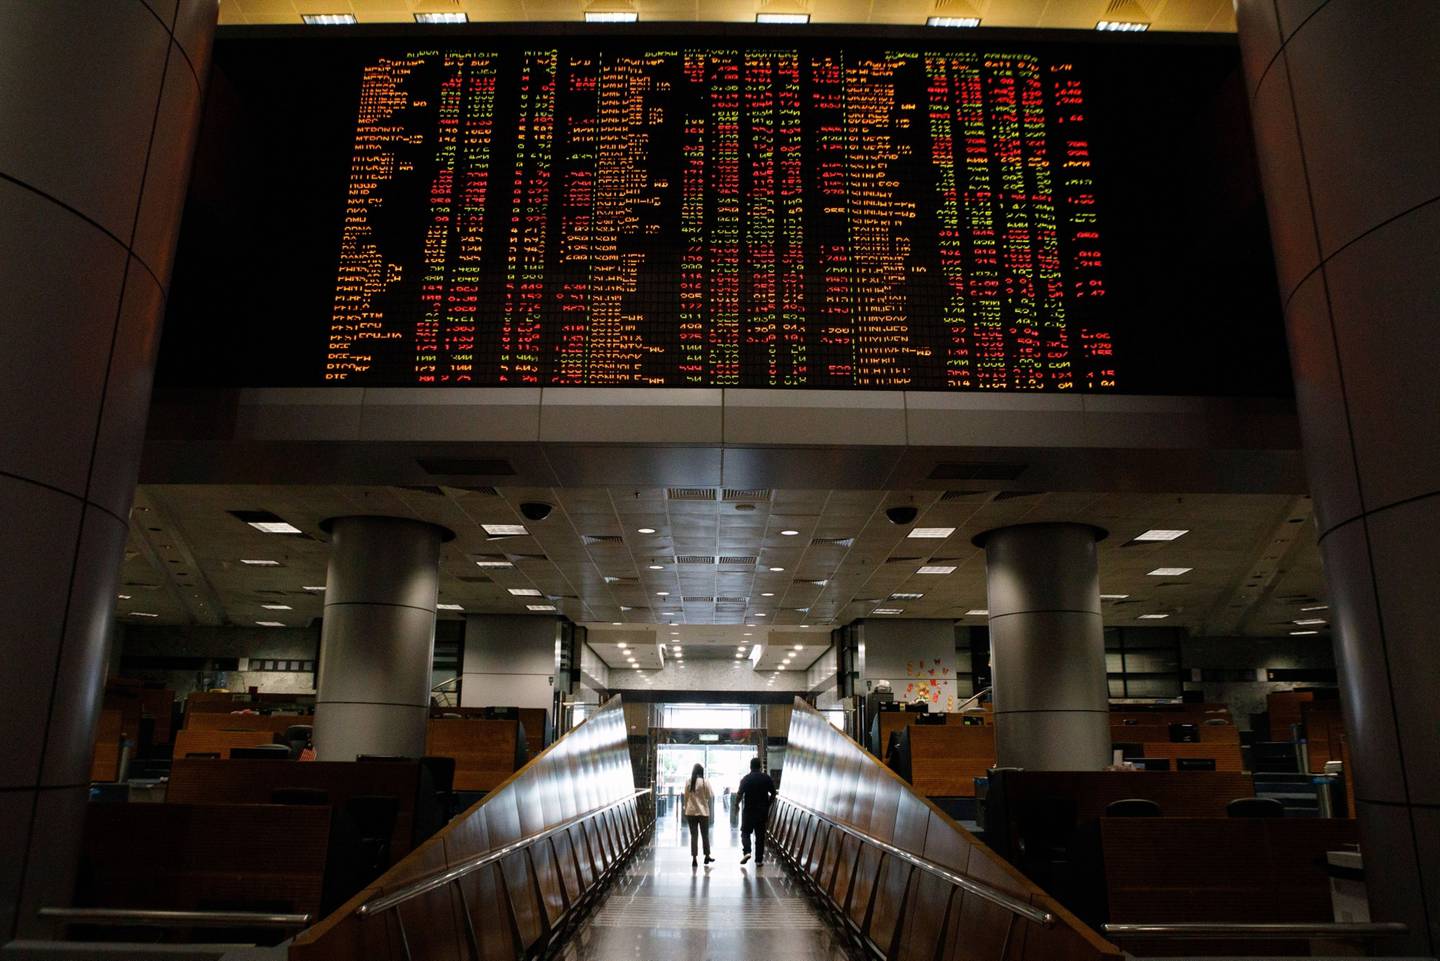 Los precios de las acciones se muestran dentro de la galería de negociación de la sede del RHB Investment Bank Bhd. en Kuala Lumpur, Malasia, el martes 11 de octubre de 2022. Fotógrafo: Samsul Said/Bloomberg